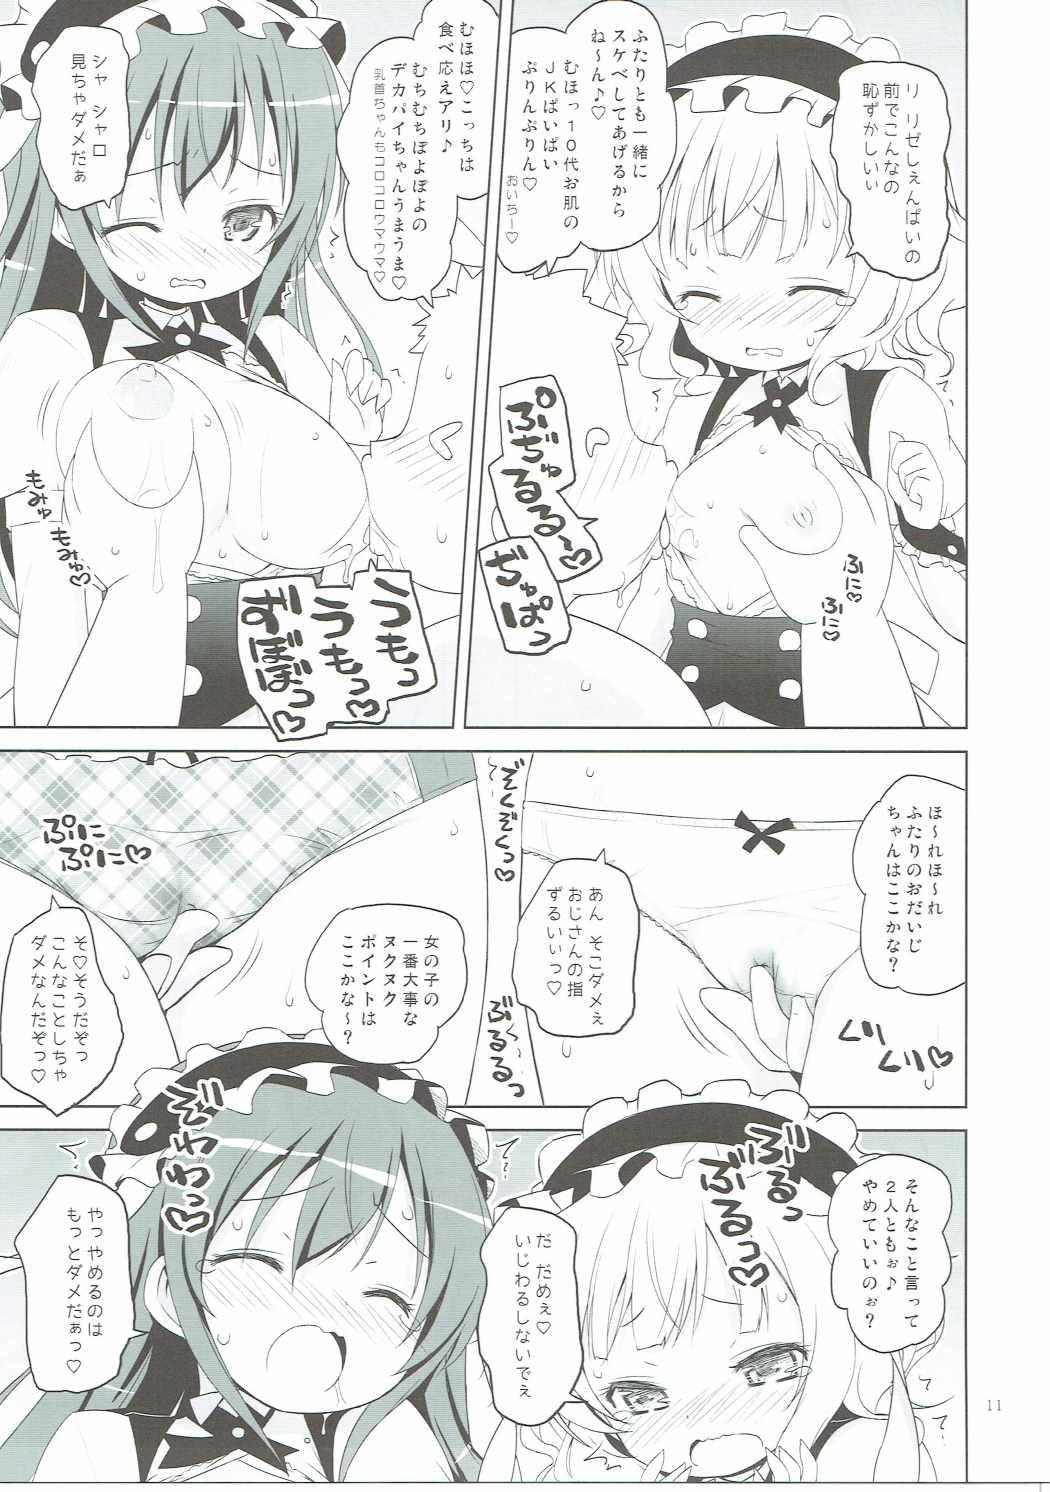 Spying Sharo-chan VS Caffeine Otoko - Gochuumon wa usagi desu ka And - Page 10